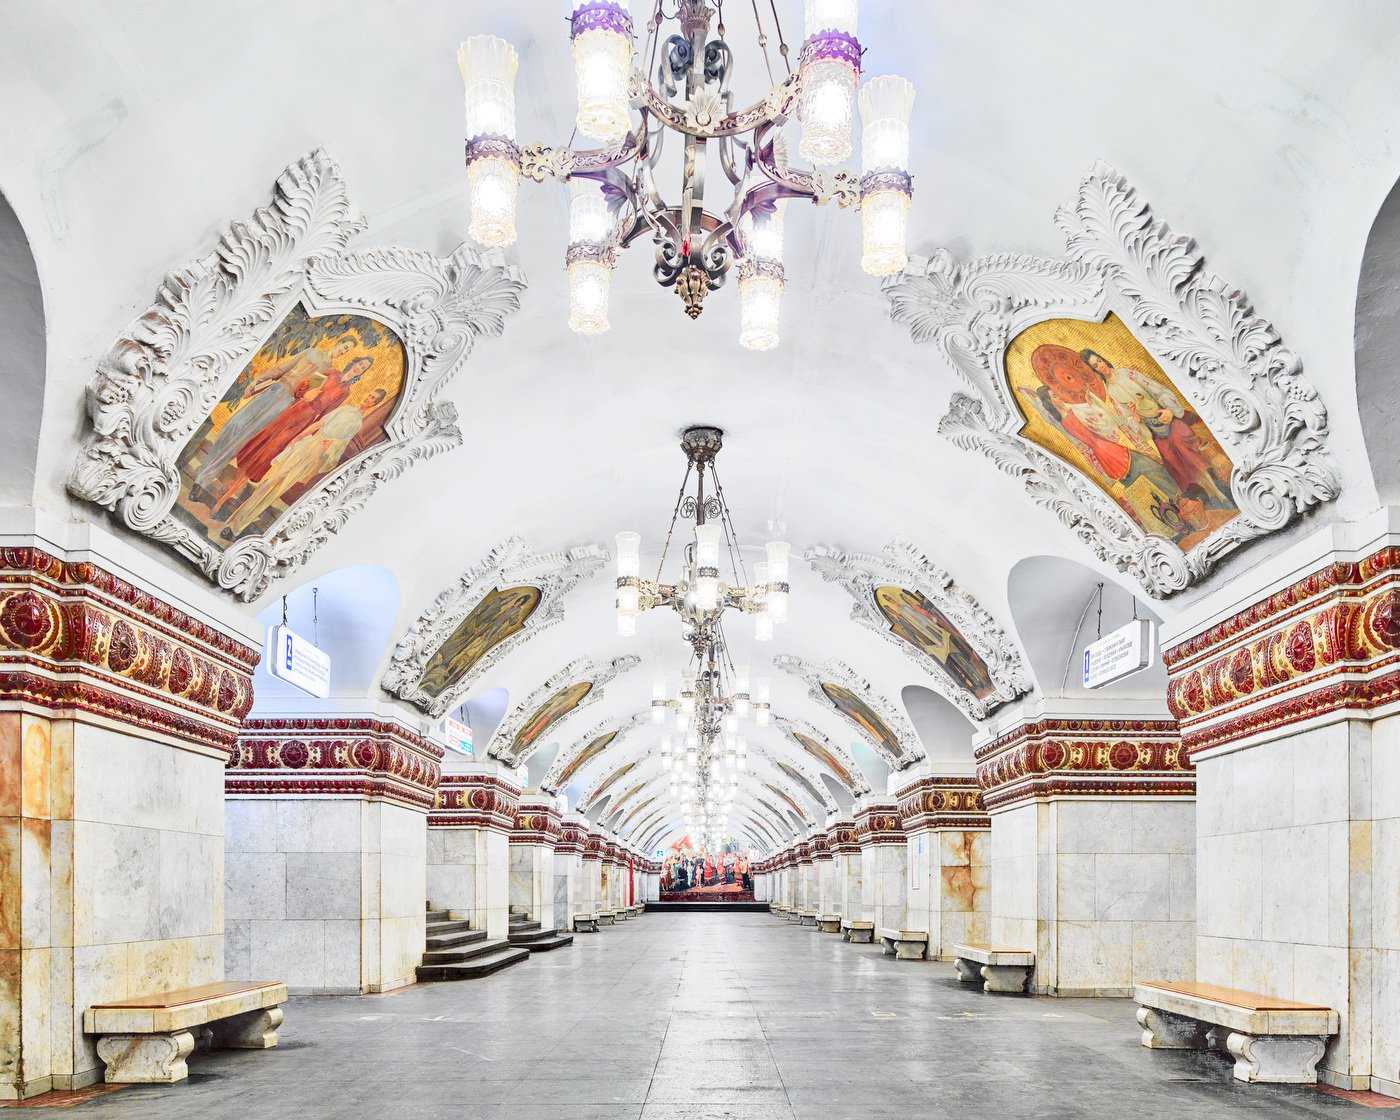 Красивые станции метро в москве — фото с названием и описанием